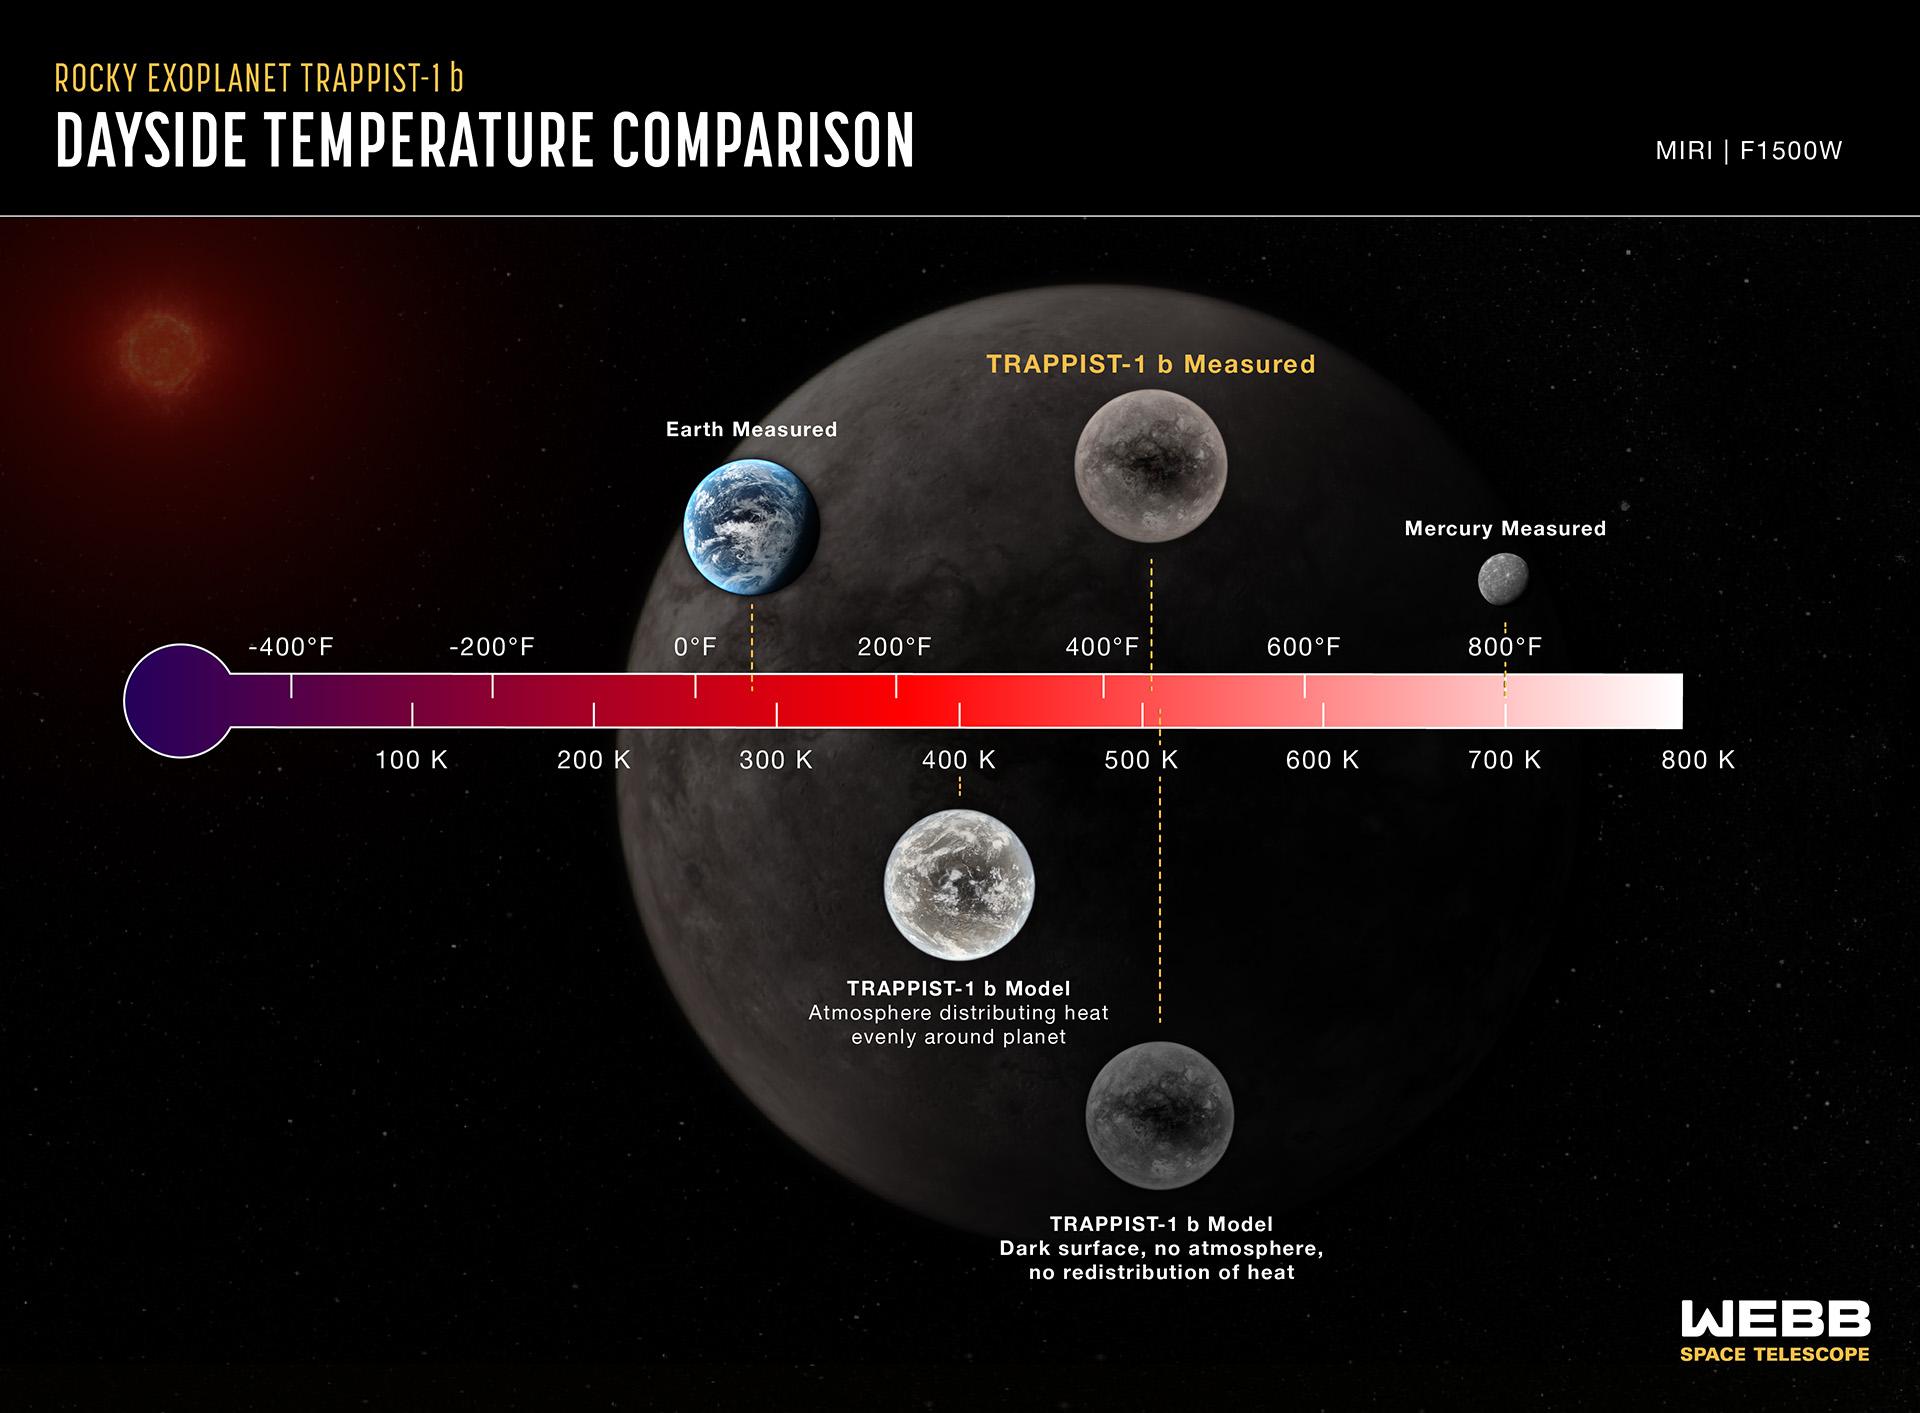 Comparaison de la température diurne de TRAPPIST-1 b, mesurée par MIRI, avec des modèles informatiques montrant ce que serait la température dans diverses conditions. Les modèles prennent en compte les propriétés connues du système, notamment la température de l'étoile et la distance orbitale de la planète. La température côté jour de Mercure est également indiquée à titre de référence. La luminosité côté jour de TRAPPIST-1b à 15 microns correspond à une température d'environ 500 kelvins (environ 230 degrés Celsius). Cela correspond à la température en supposant que la planète est verrouillée par la marée (un côté face à l'étoile à tout moment), avec une surface de couleur sombre, sans atmosphère, et sans redistribution de la chaleur du côté jour vers le côté nuit. Si l'énergie thermique de l'étoile était distribuée uniformément autour de la planète (par exemple, par une atmosphère circulante exempte de dioxyde de carbone), la température à 15 microns serait de 400 kelvins (127 degrés Celsius). Si l'atmosphère contenait une quantité importante de dioxyde de carbone, elle émettrait encore moins de lumière à 15 microns et semblerait encore plus froide. Bien que TRAPPIST-1b soit chaude par rapport à la Terre, elle est plus froide que la face cachée de Mercure, qui se compose de roches nues et d'aucune atmosphère significative. Mercure reçoit environ 1,6 fois plus d'énergie du Soleil que TRAPPIST-1b n'en reçoit de son étoile. [NASA, ESA, CSA - Joseph Olmsted (STScI)]